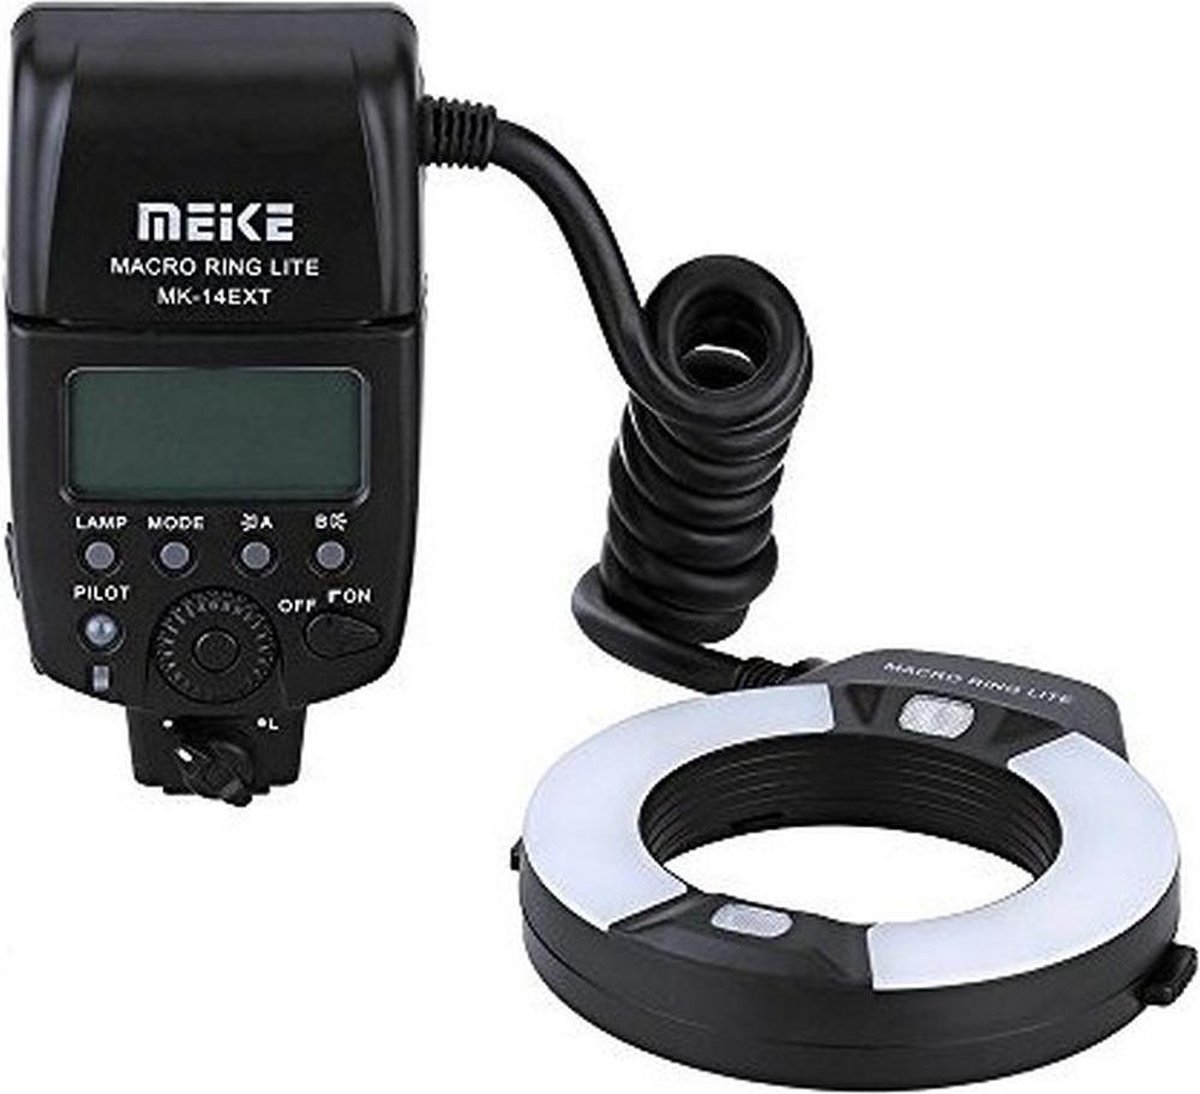 MK-14EXTN i-TTL Macro Ringflitser voor Nikon